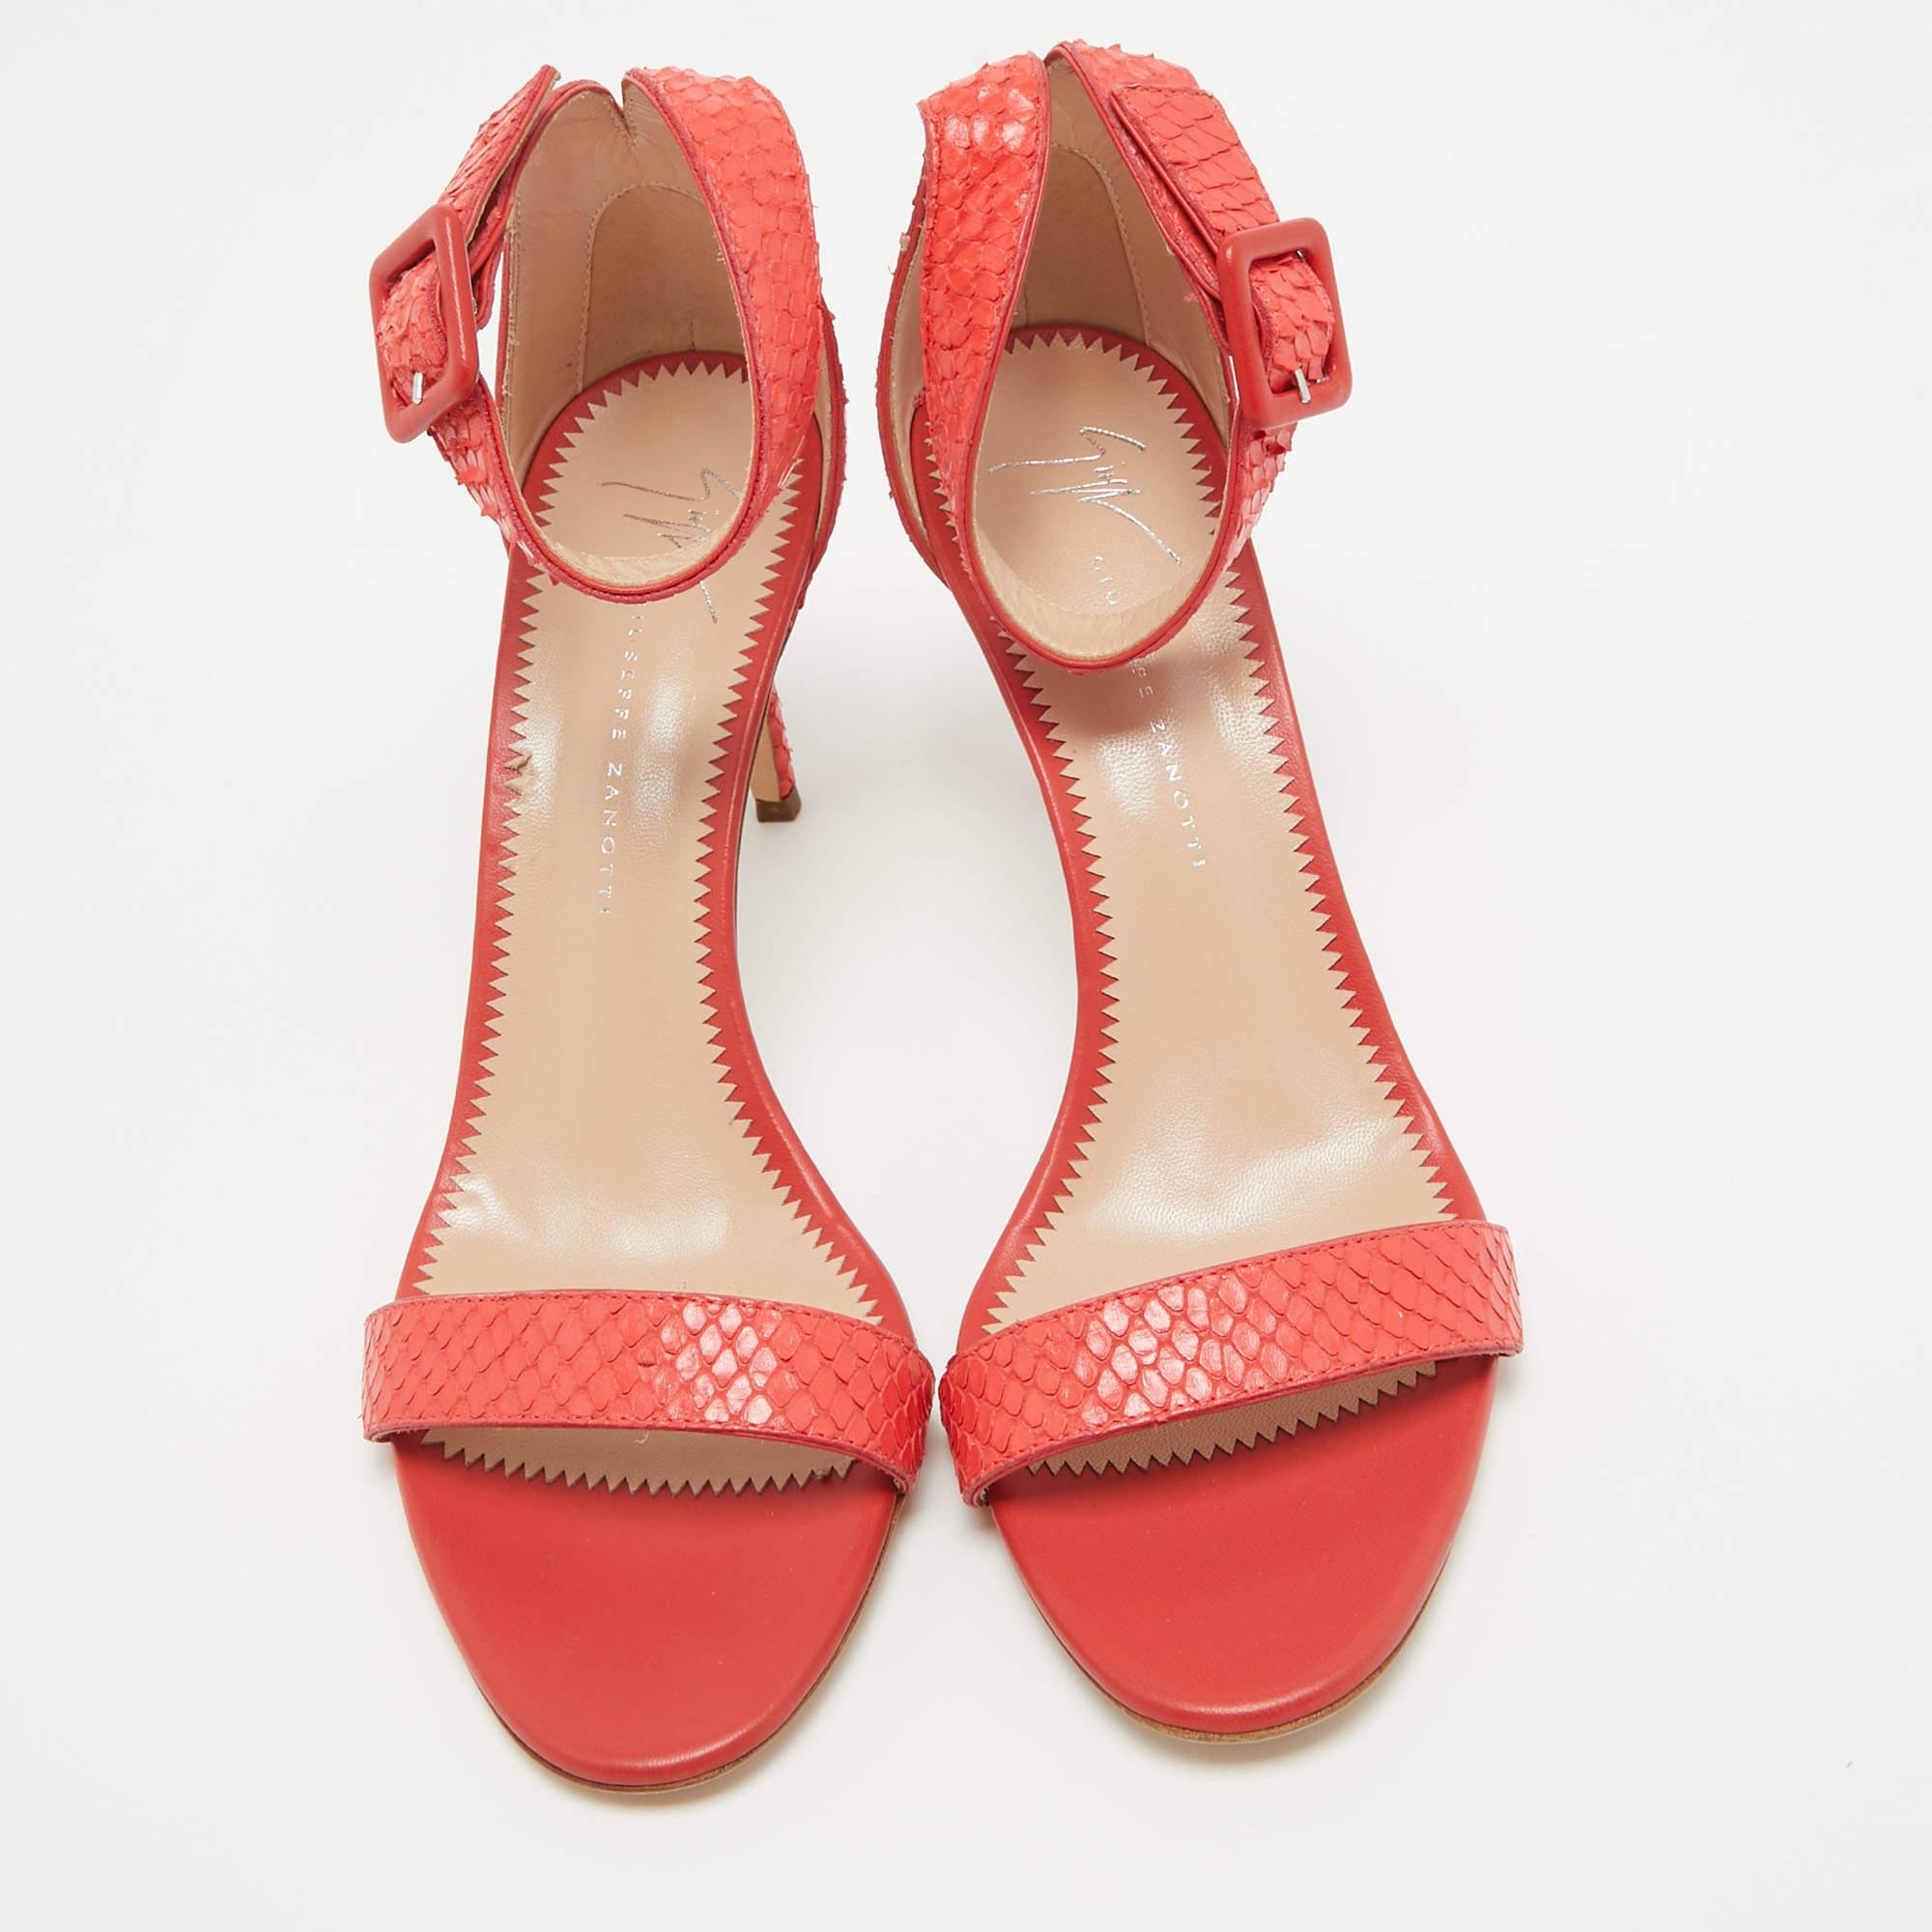 Wir lieben diese Sandalen von Giuseppe Zanotti in einem edlen Farbton. Sie haben eine schlanke Silhouette und eine gute Passform, um ein Statement zu setzen. Tragen Sie sie unter Maxiröcken für einen Hauch von Glamour, oder lassen Sie sie mit kurzen